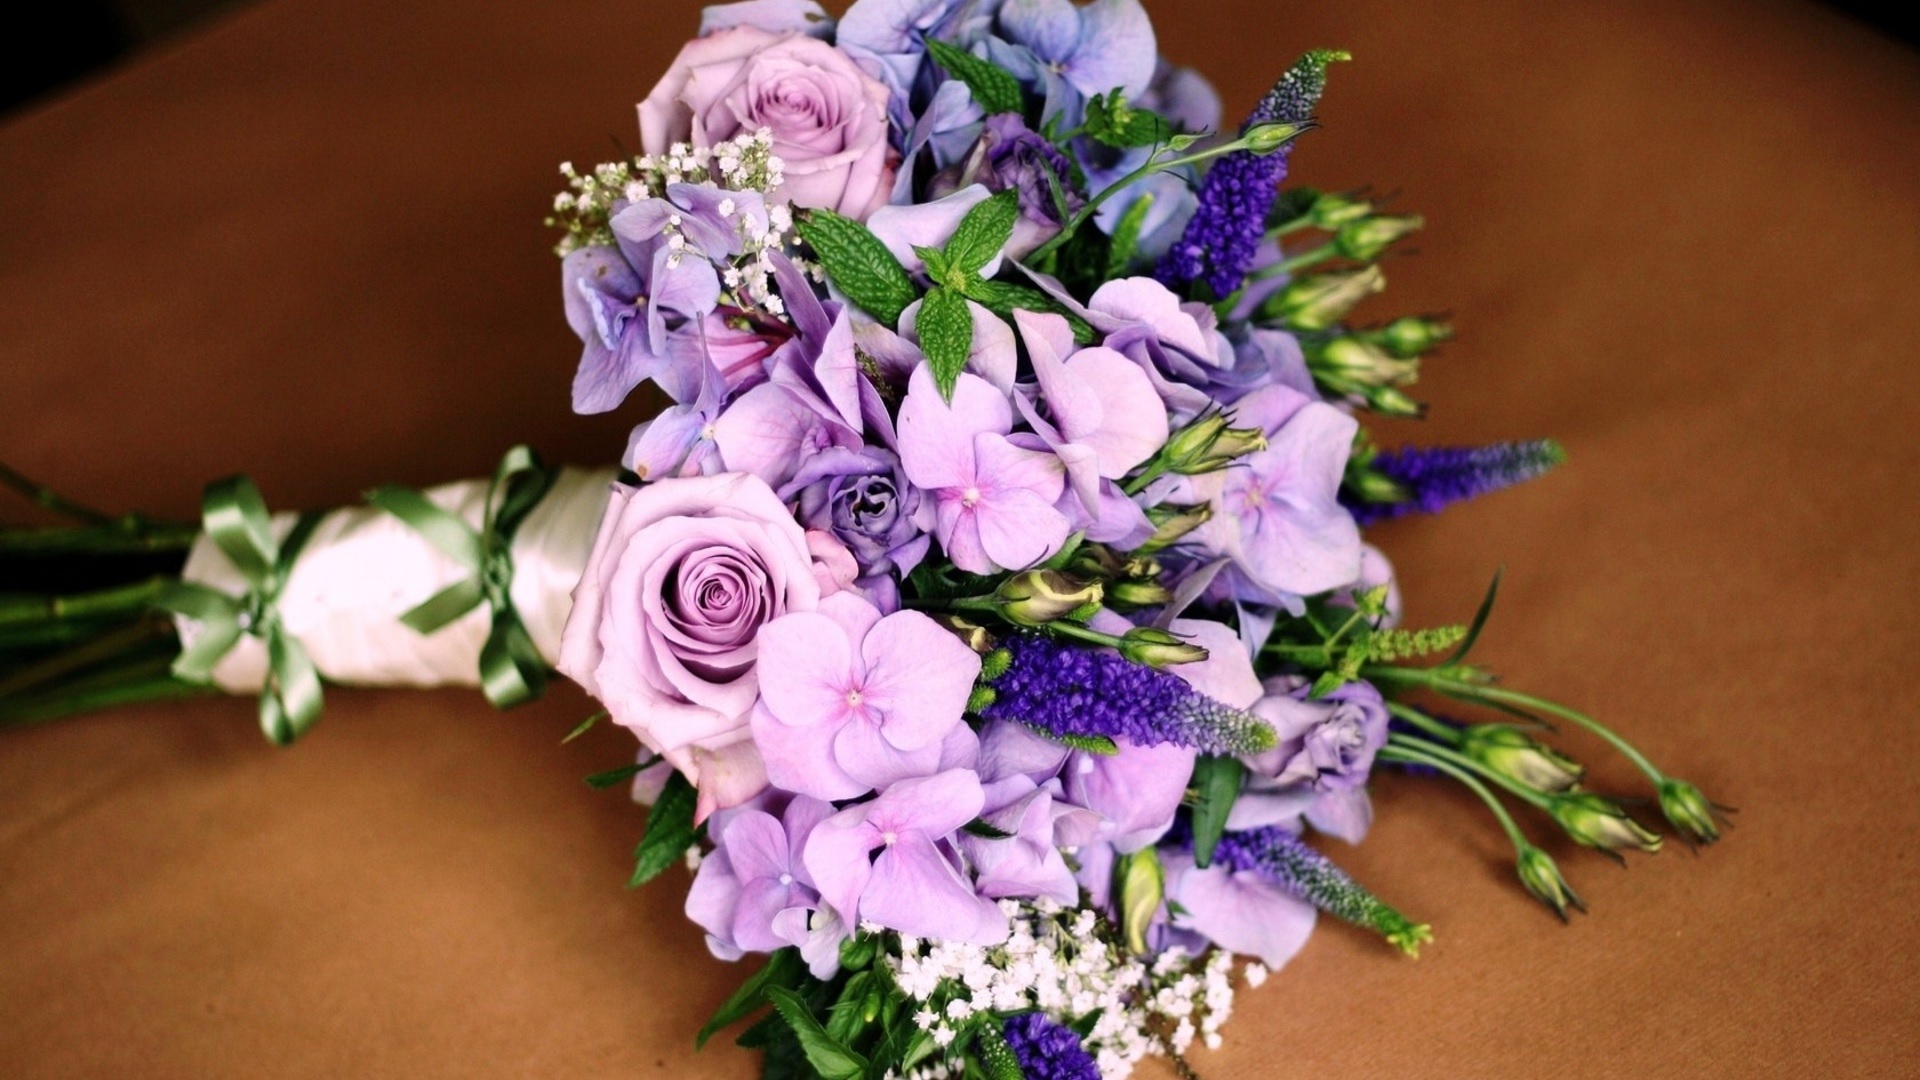 La combinación de tonos lilas en el ramo.